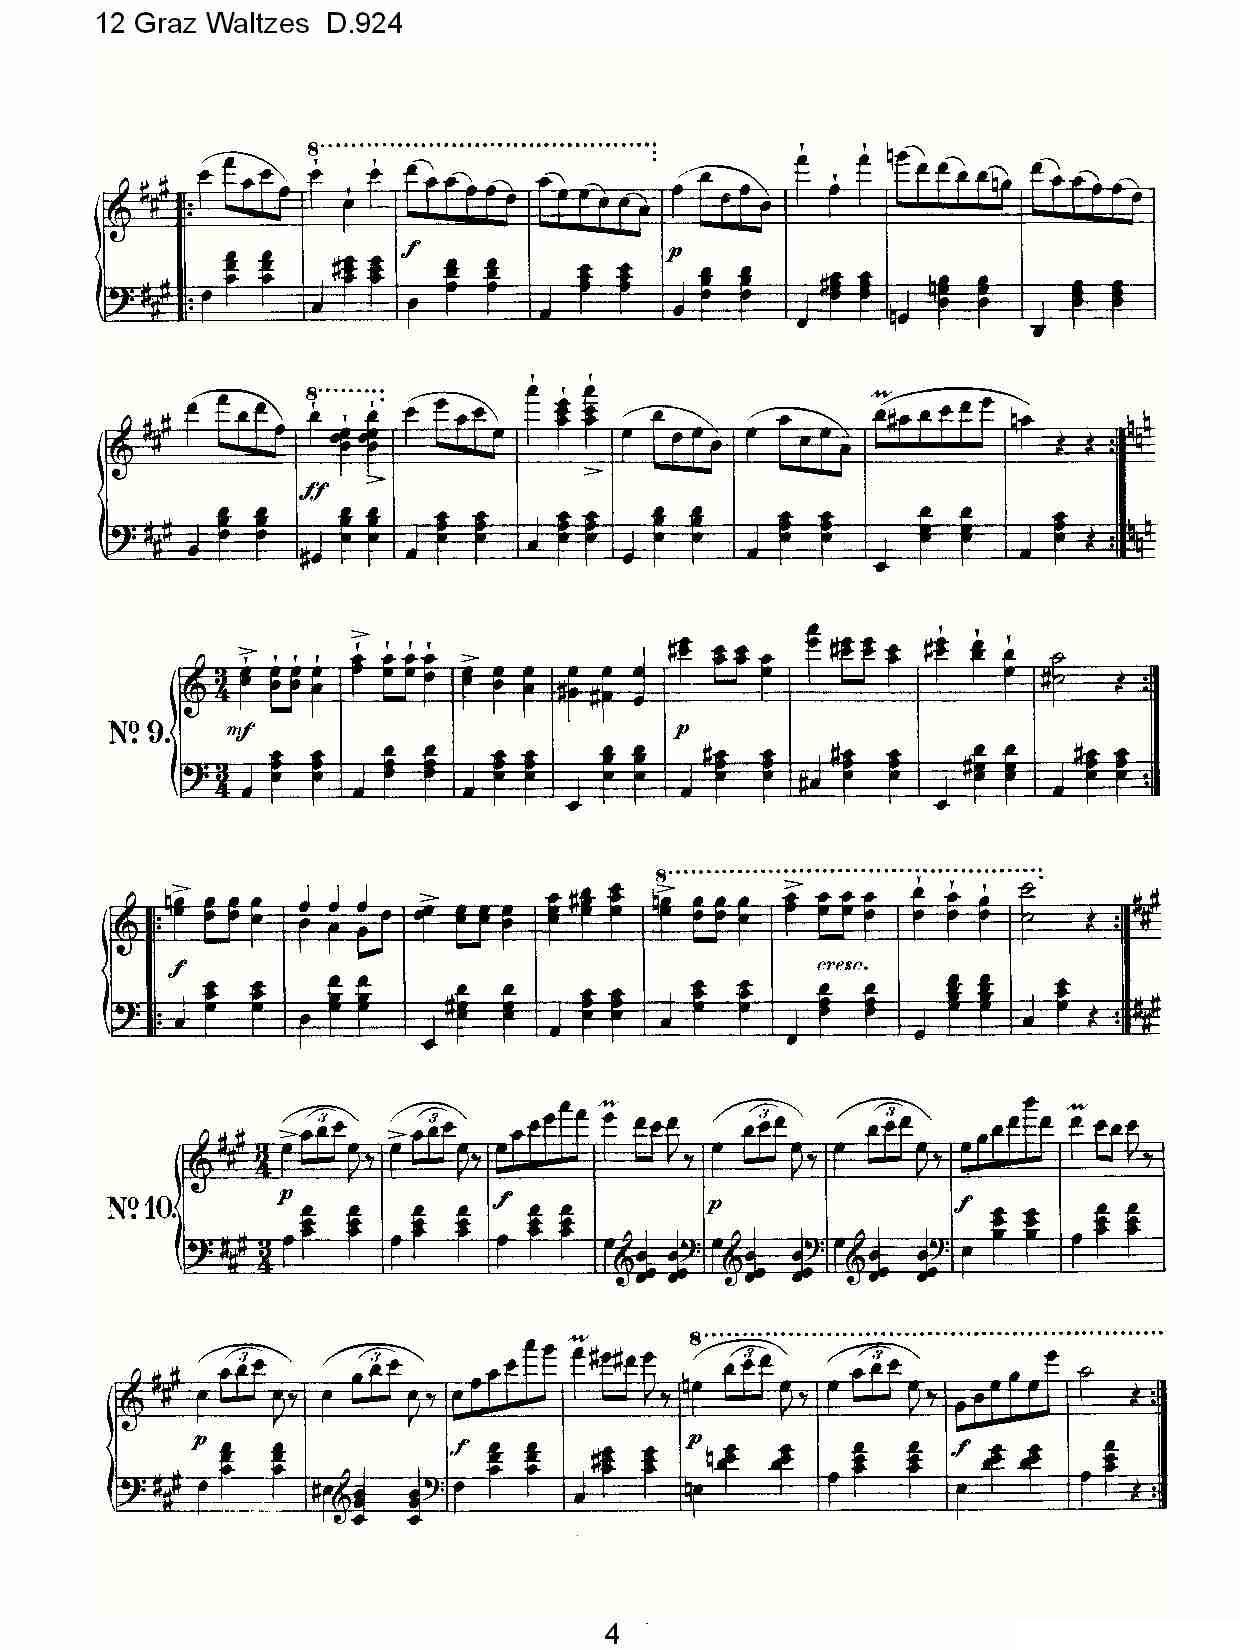 12 Graz Waltzes D.924（12格拉茨快步舞 D.924）钢琴曲谱（图4）